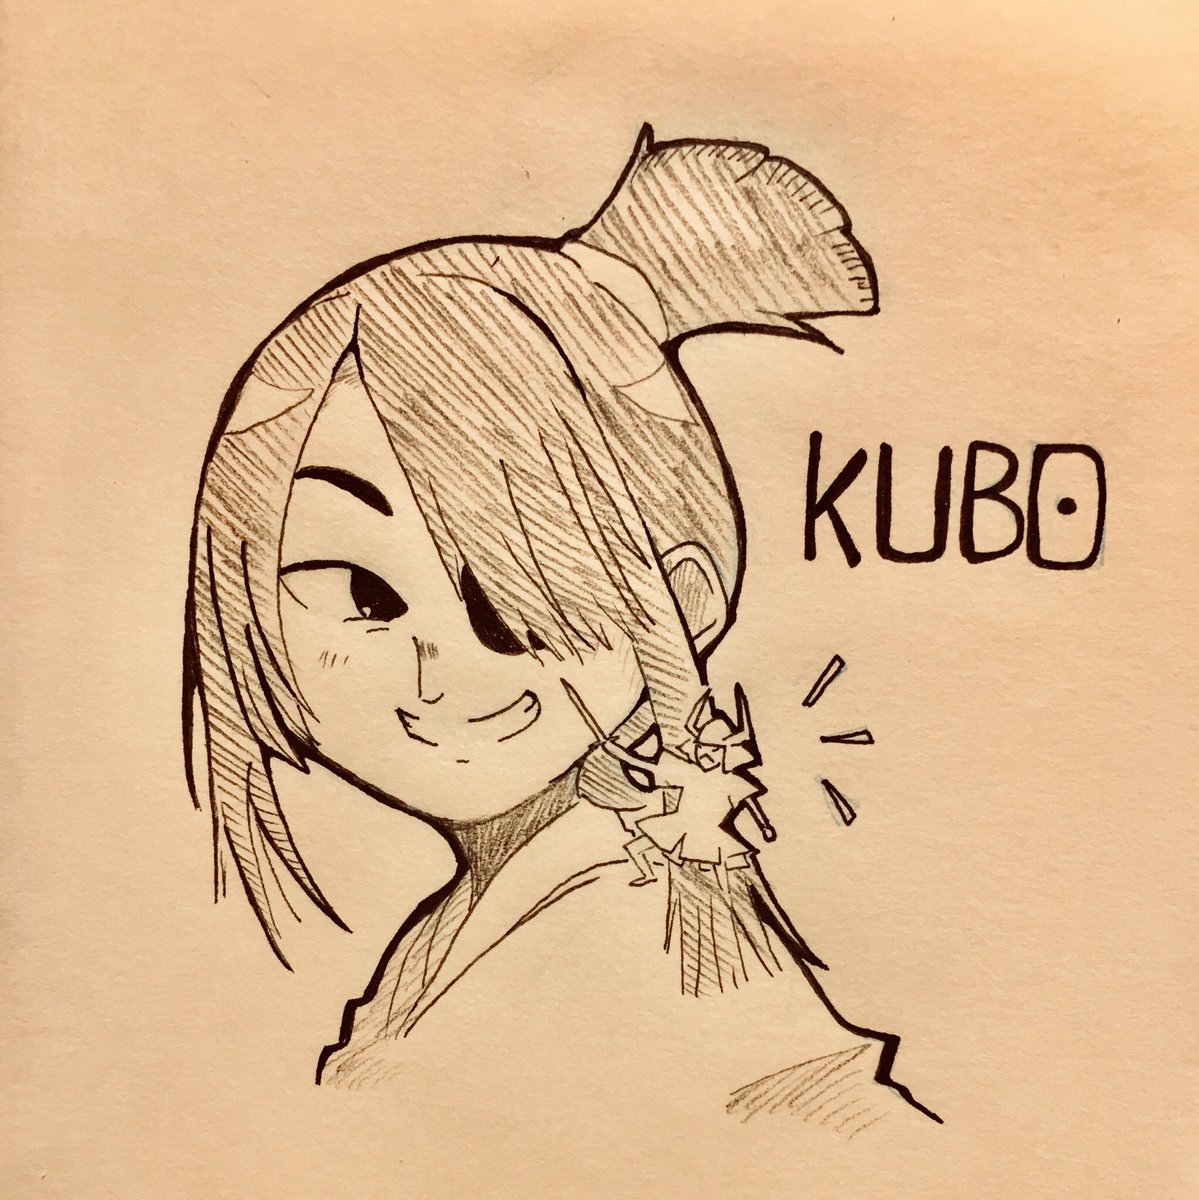 嬉しいので私も劇場公開した時に描いたKUBO絵を貼るぜ!! 